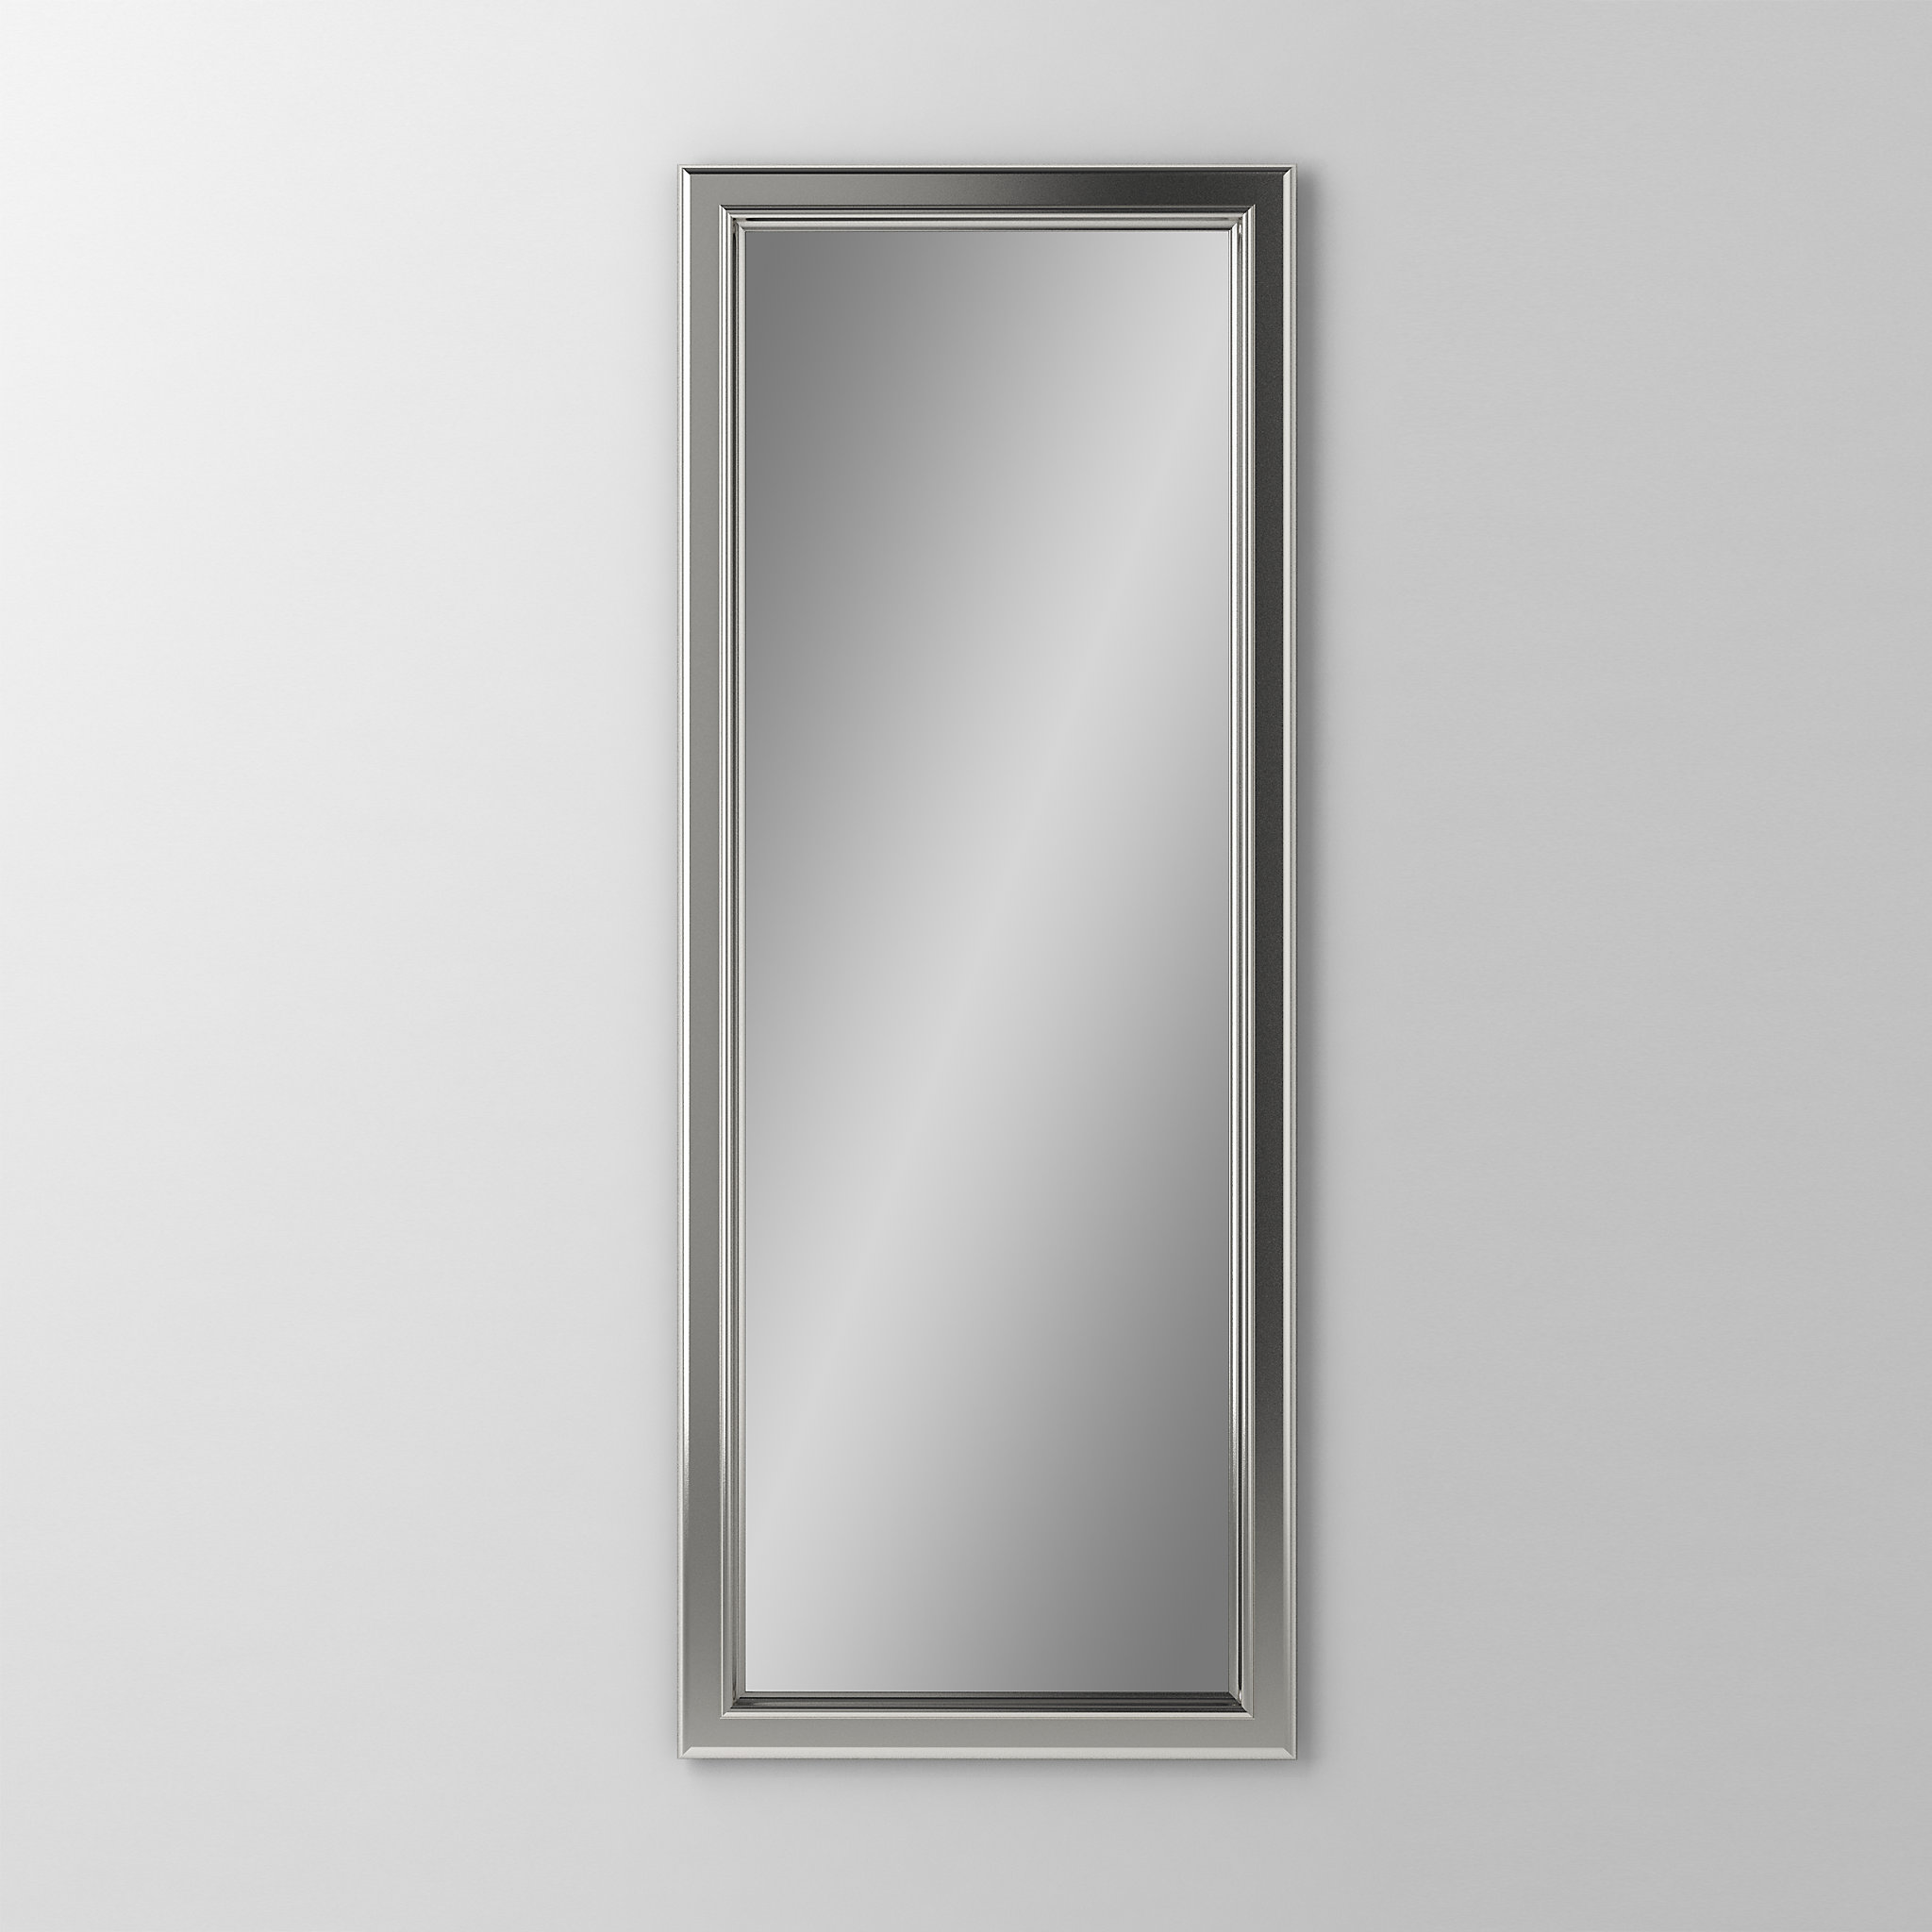 Robern DM2040BM70Main Line Mirror, 20" x 40" x 1-5/8", Bryn Mawr Frame, Satin Nickel